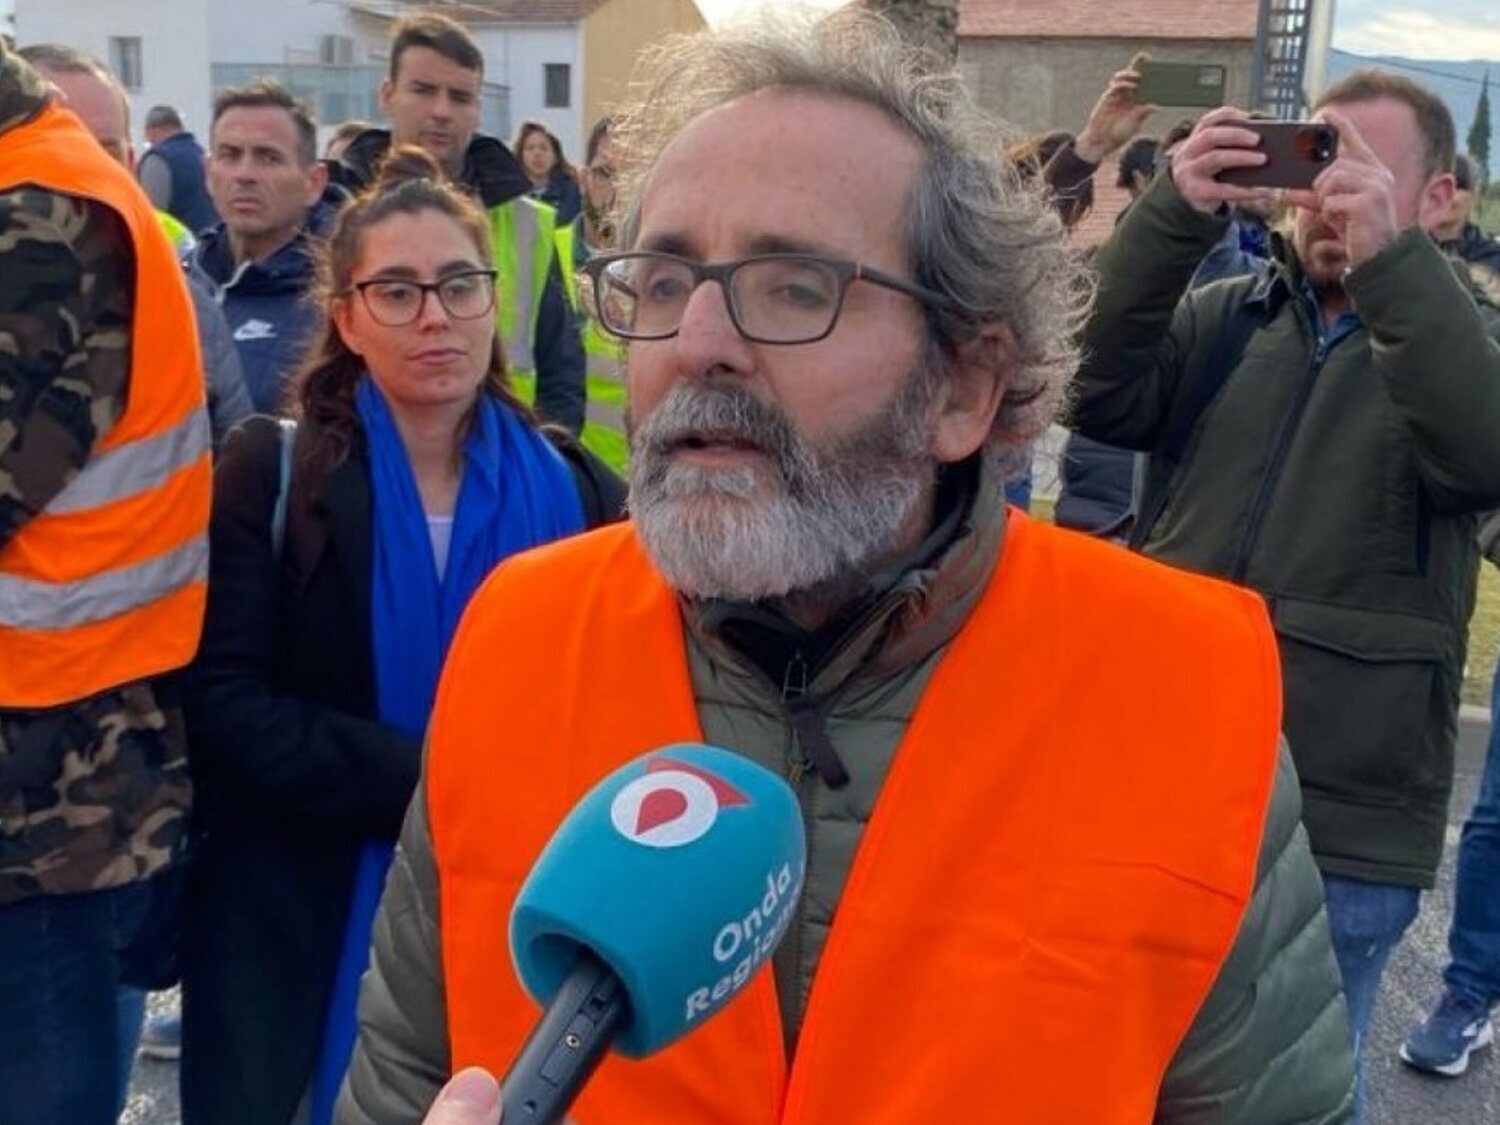 Diego Conesa, el líder de las 'tractoradas' en Murcia: fundador de una "secta" y vinculado a VOX